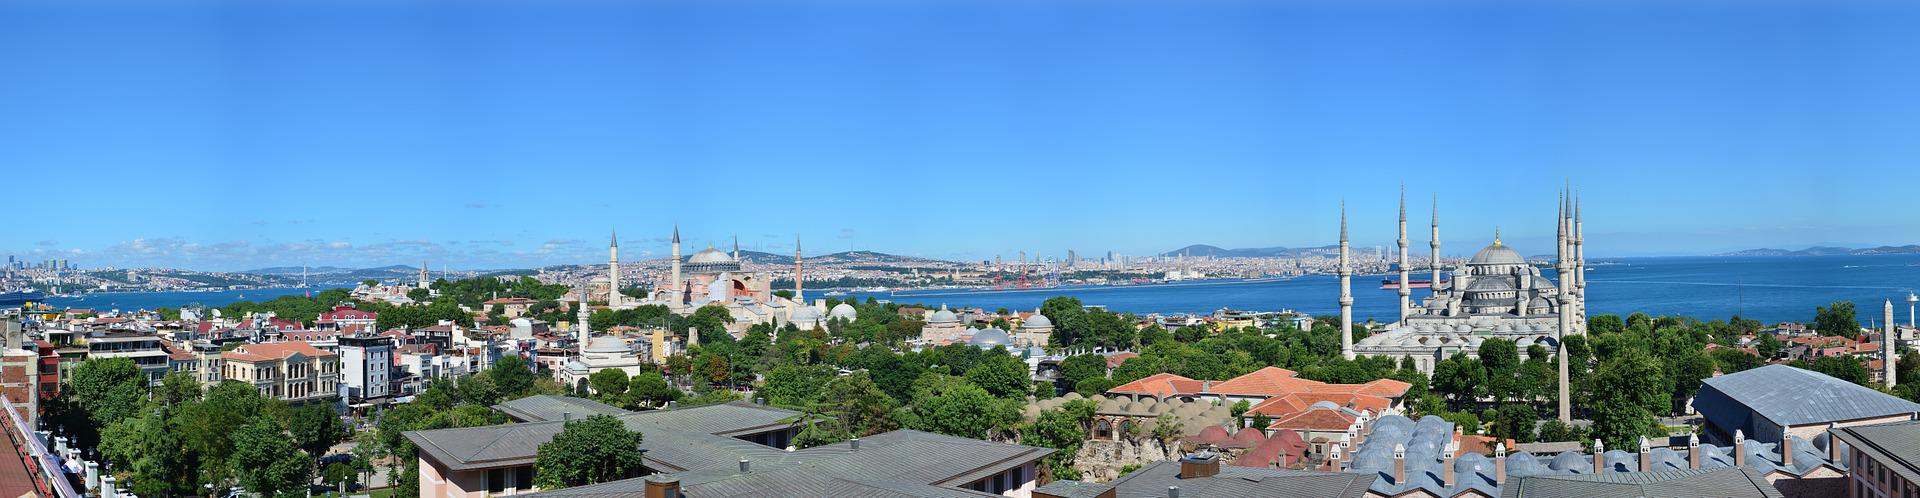 Soggiorni a Istanbul [Voli Inclusi]